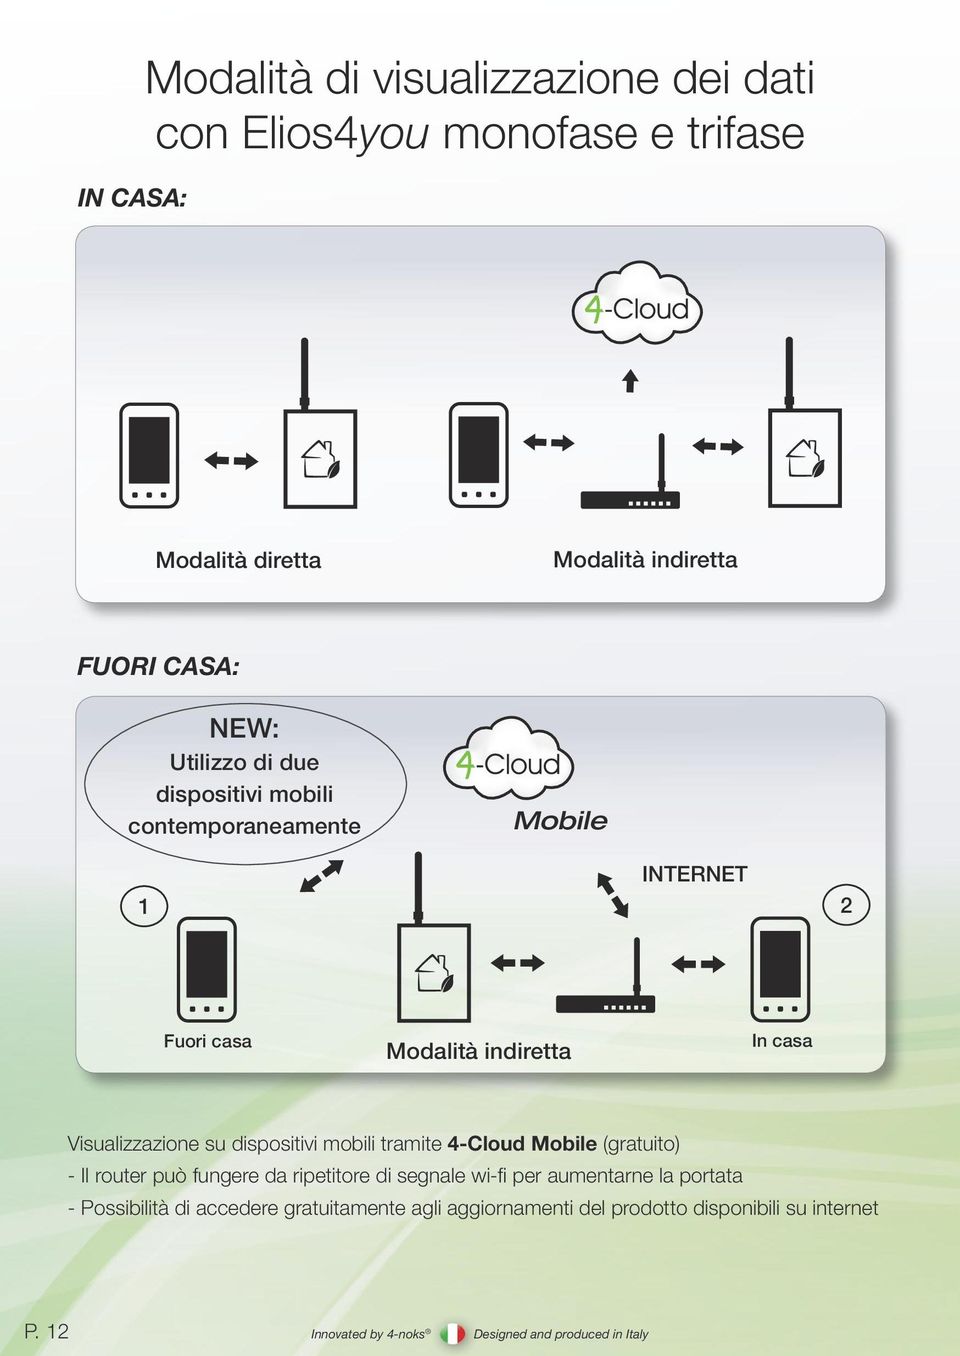 Visualizzazione su dispositivi mobili tramite 4-Cloud Mobile (gratuito) - Il router può fungere da ripetitore di segnale